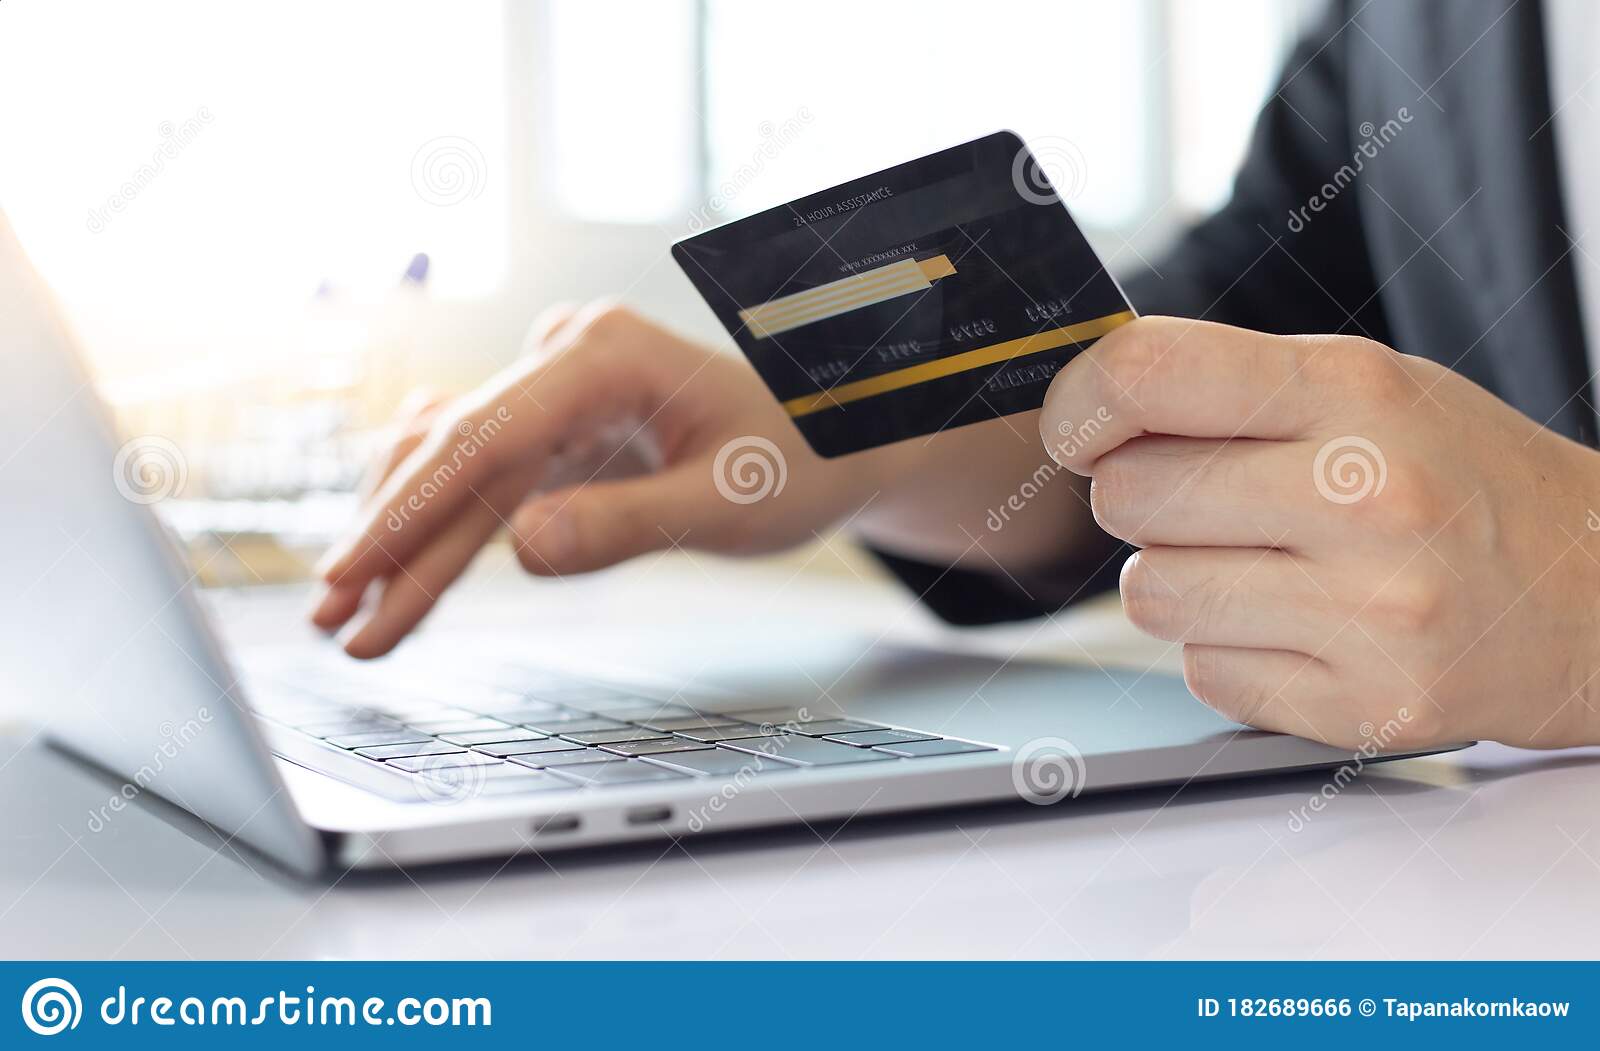 Ottenere la tua carta di credito online